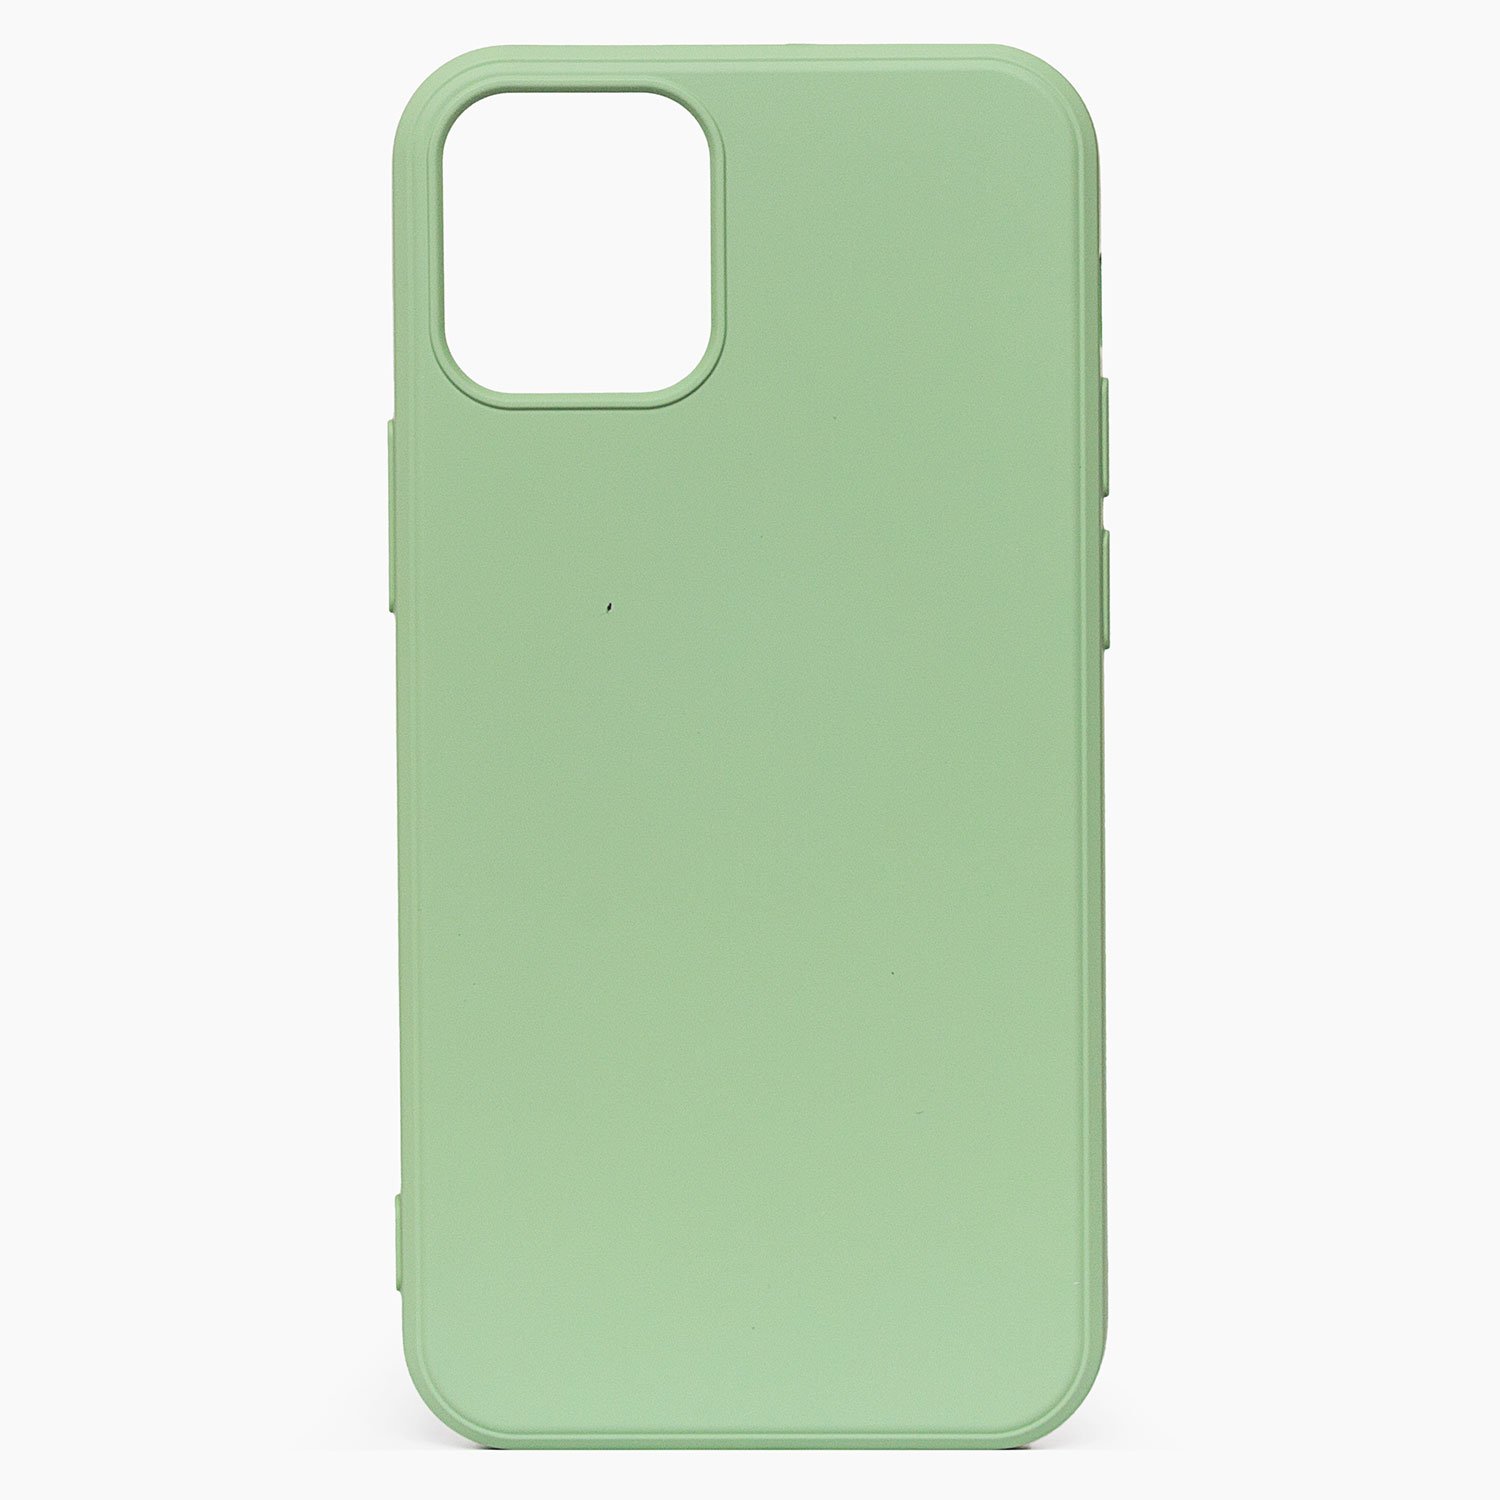 Чехол-накладка Activ Full Original Design для смартфона Apple iPhone 12 mini,  светло-зеленый, 815837 купить по цене 160 руб в Омске в интернет-магазине  e2e4